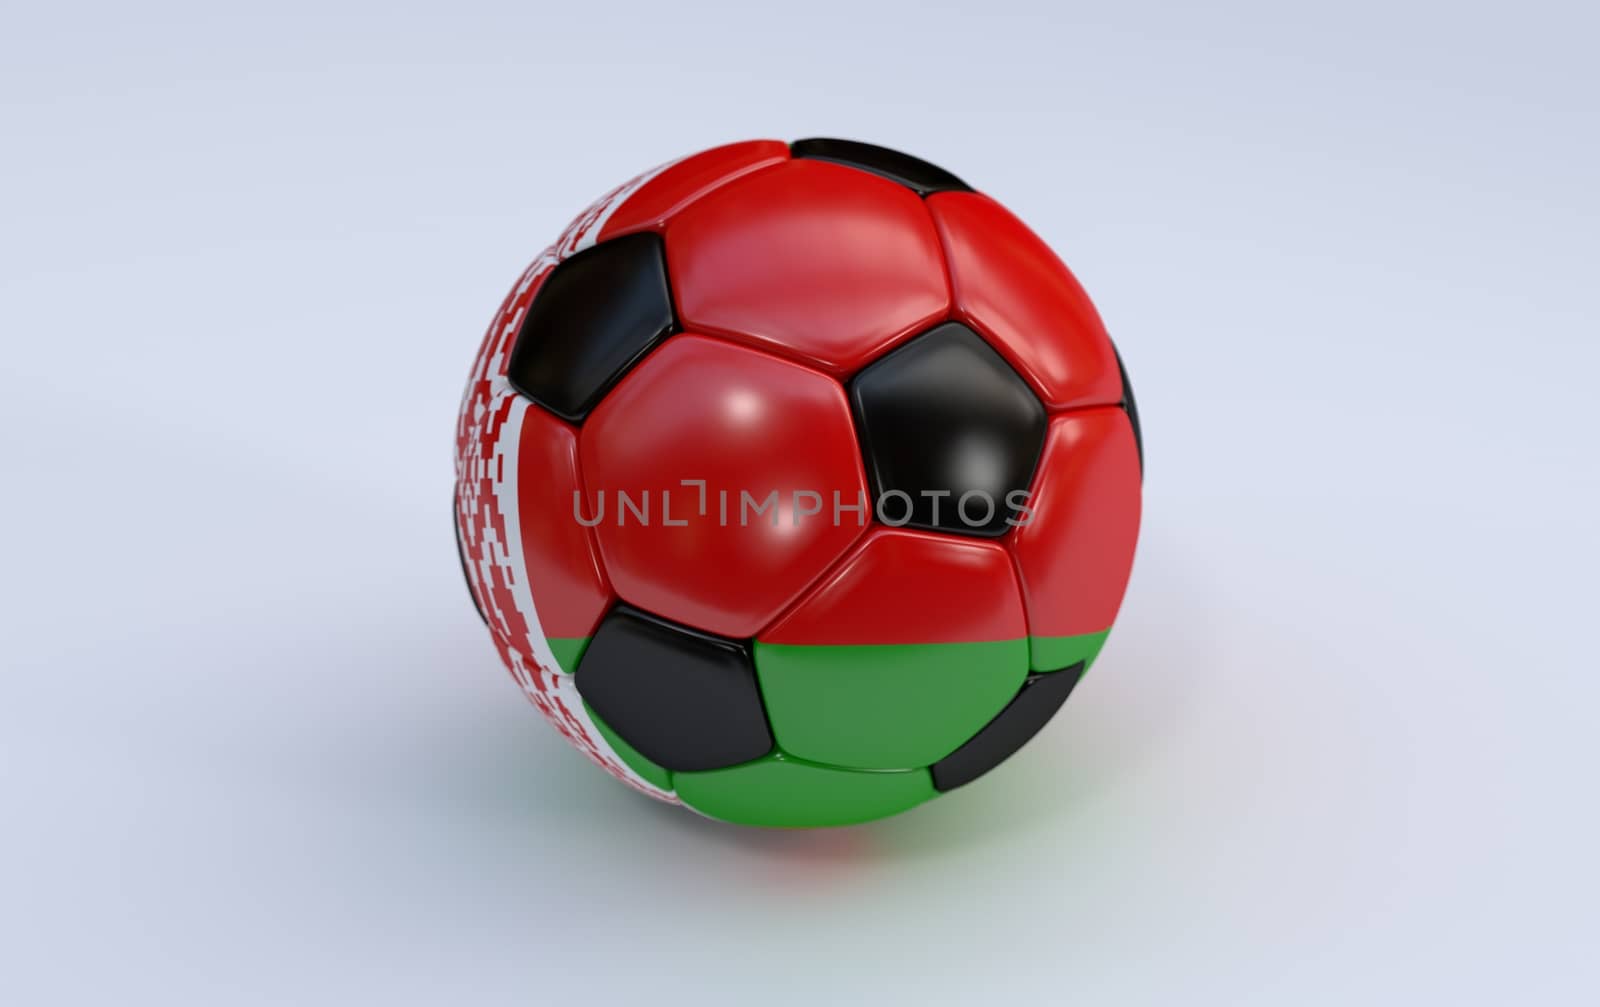 Belarus flag on soccer, football ball on white background